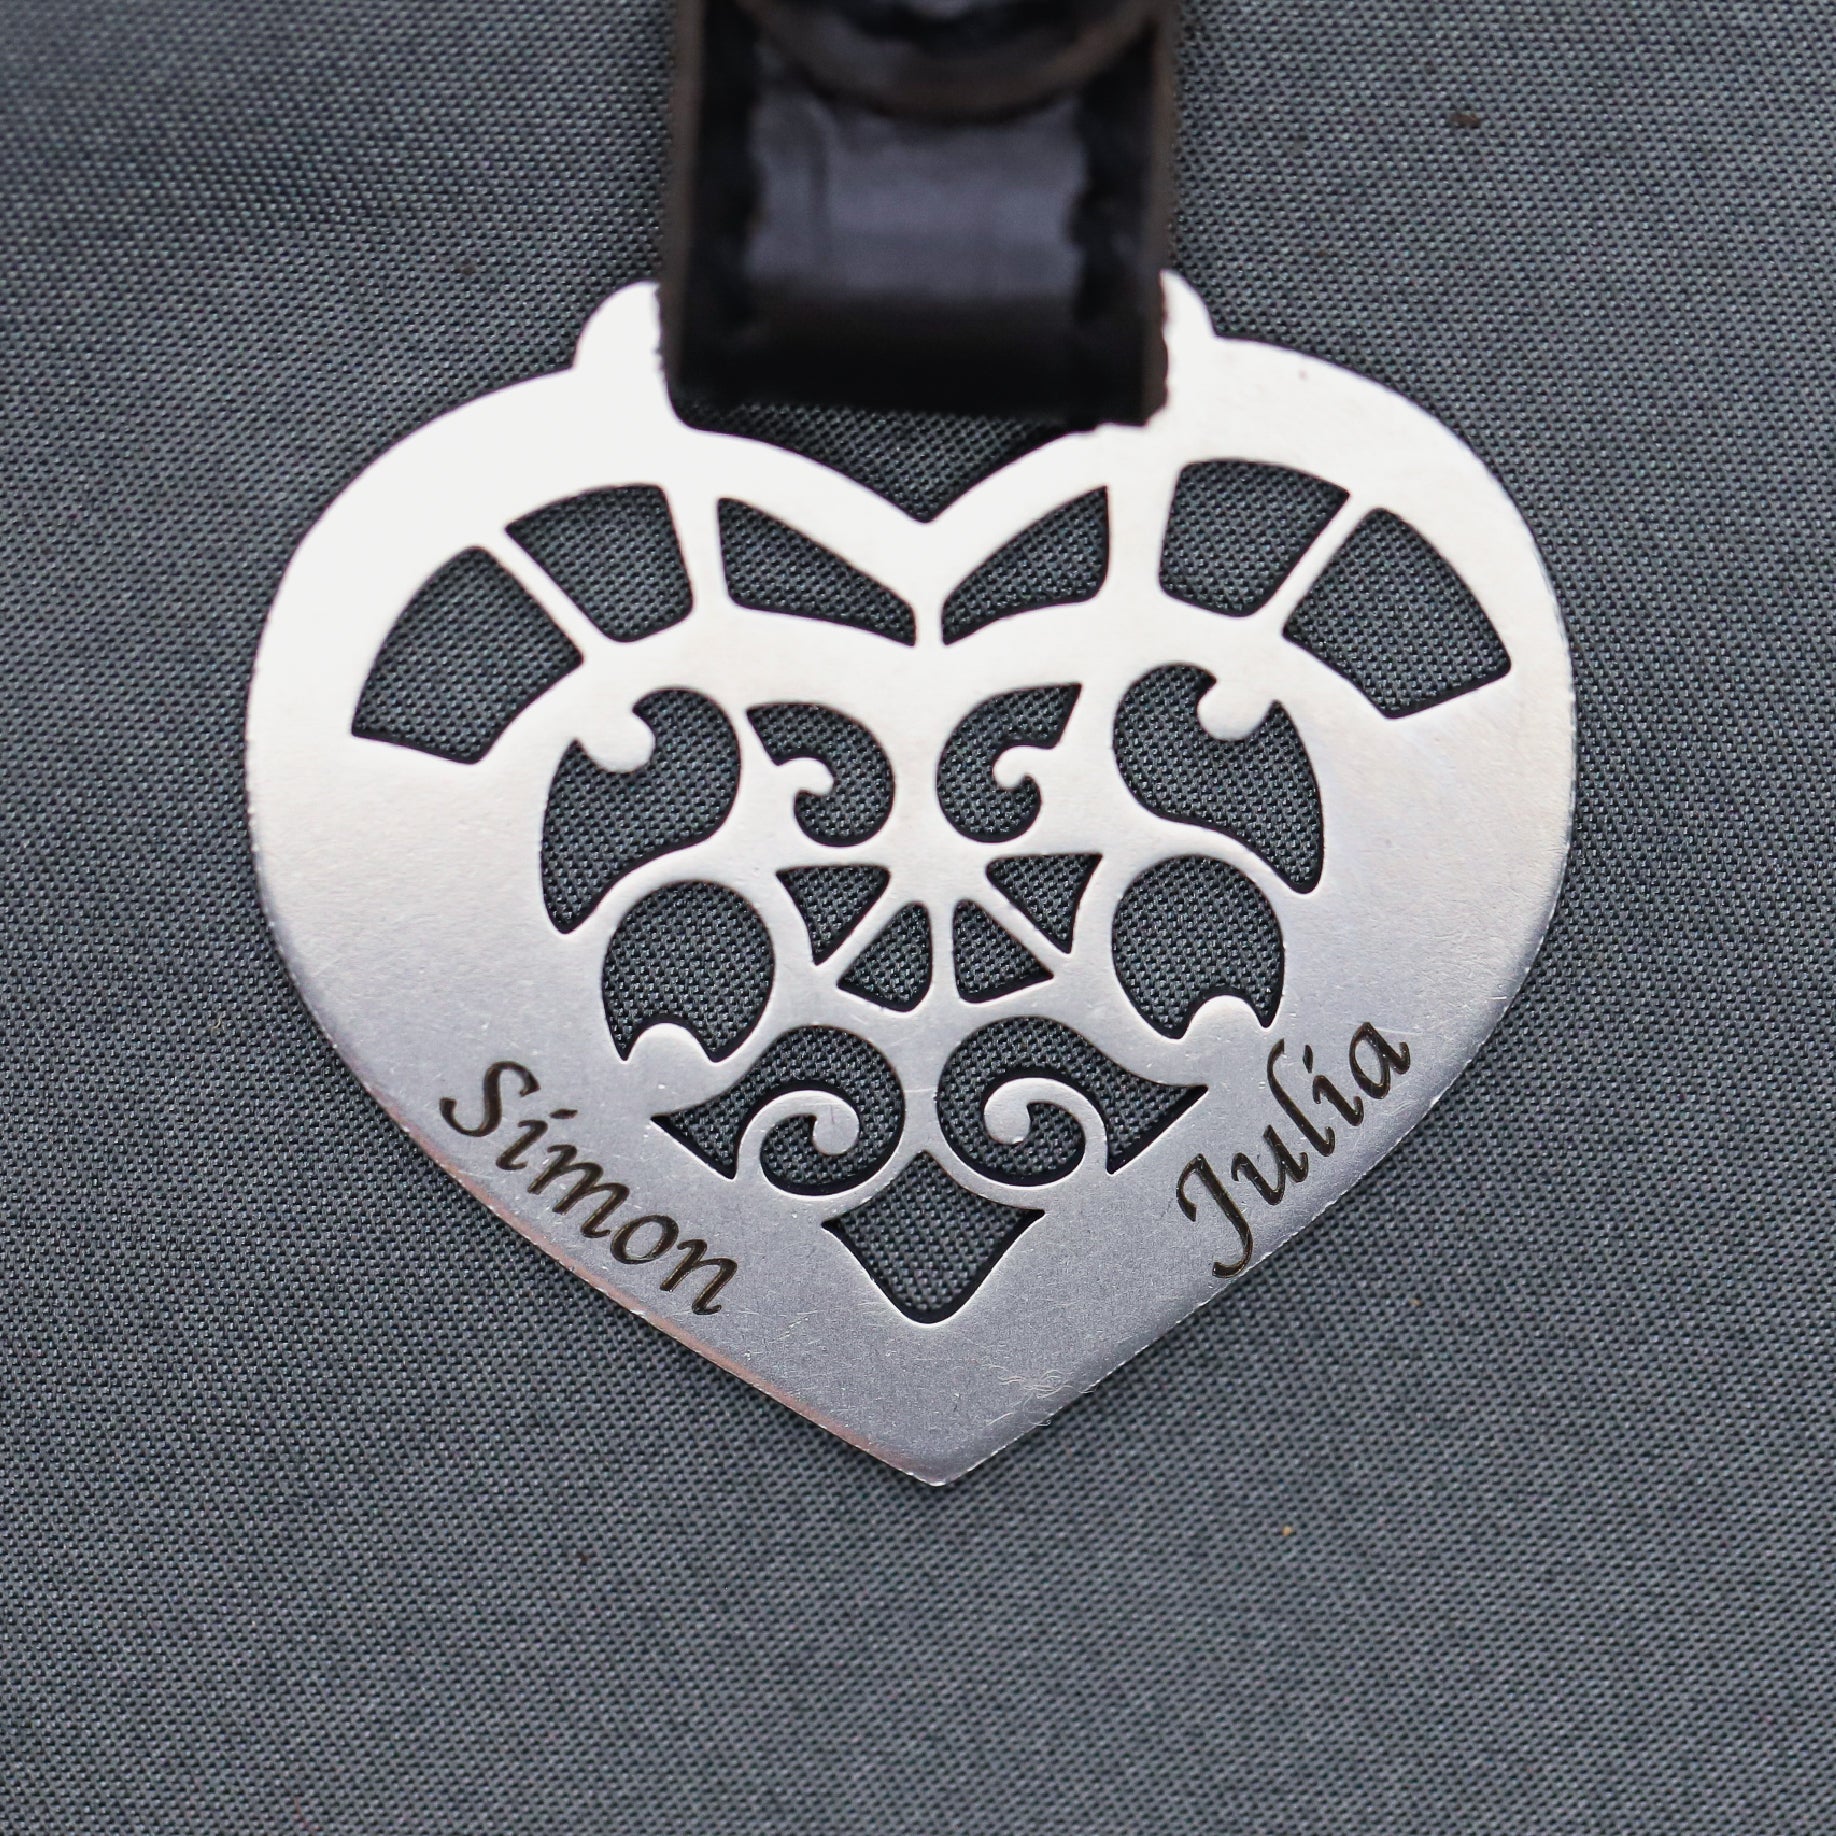 Plaque en métal Steelmonks,Cœur connecté. Décoration murale en forme de coeur disponible en plusieurs tailles et couleurs.